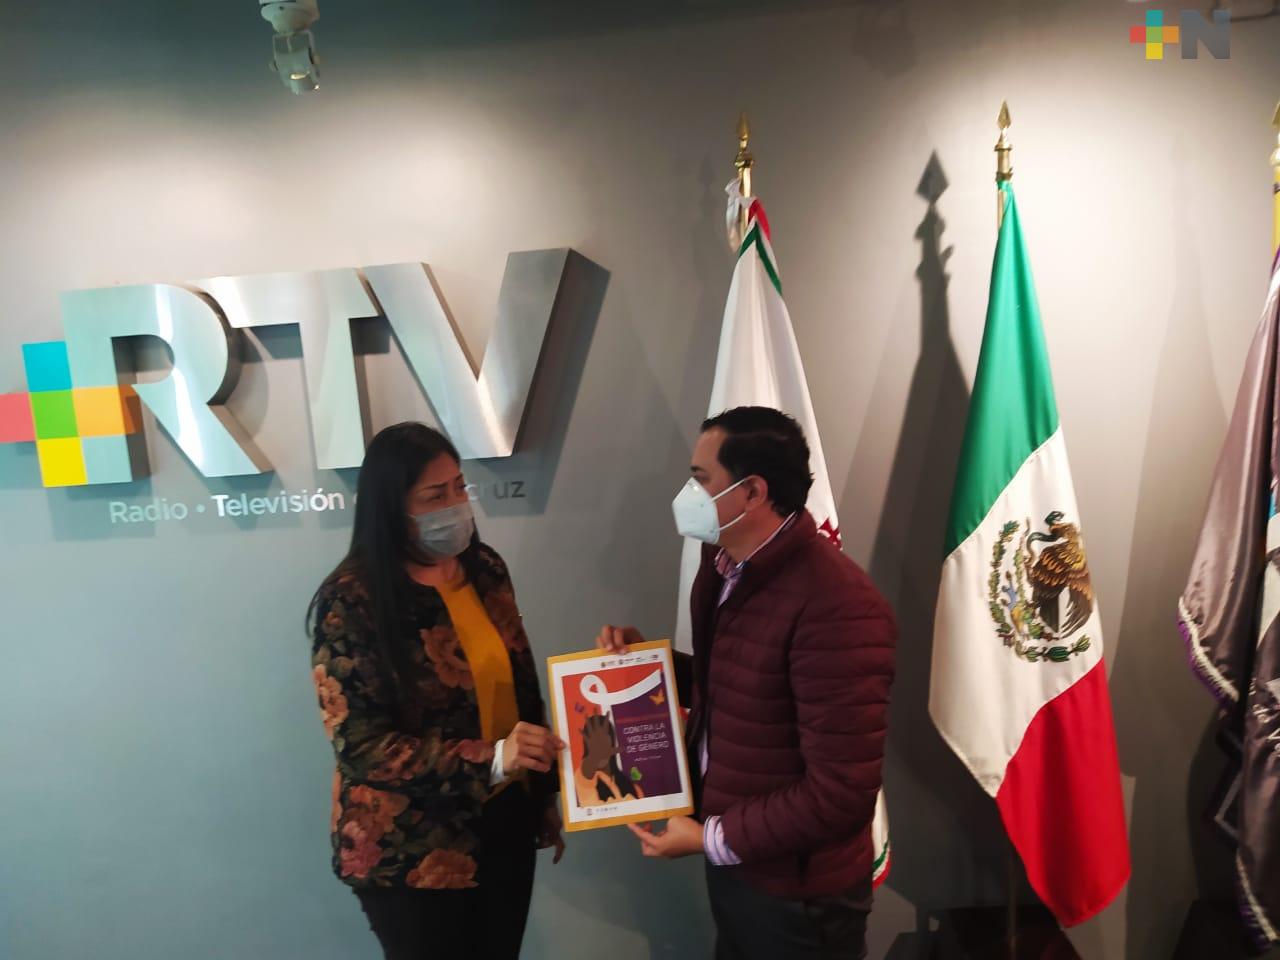 IVM entregó a RTV material para promover y difundir  derechos de las mujeres